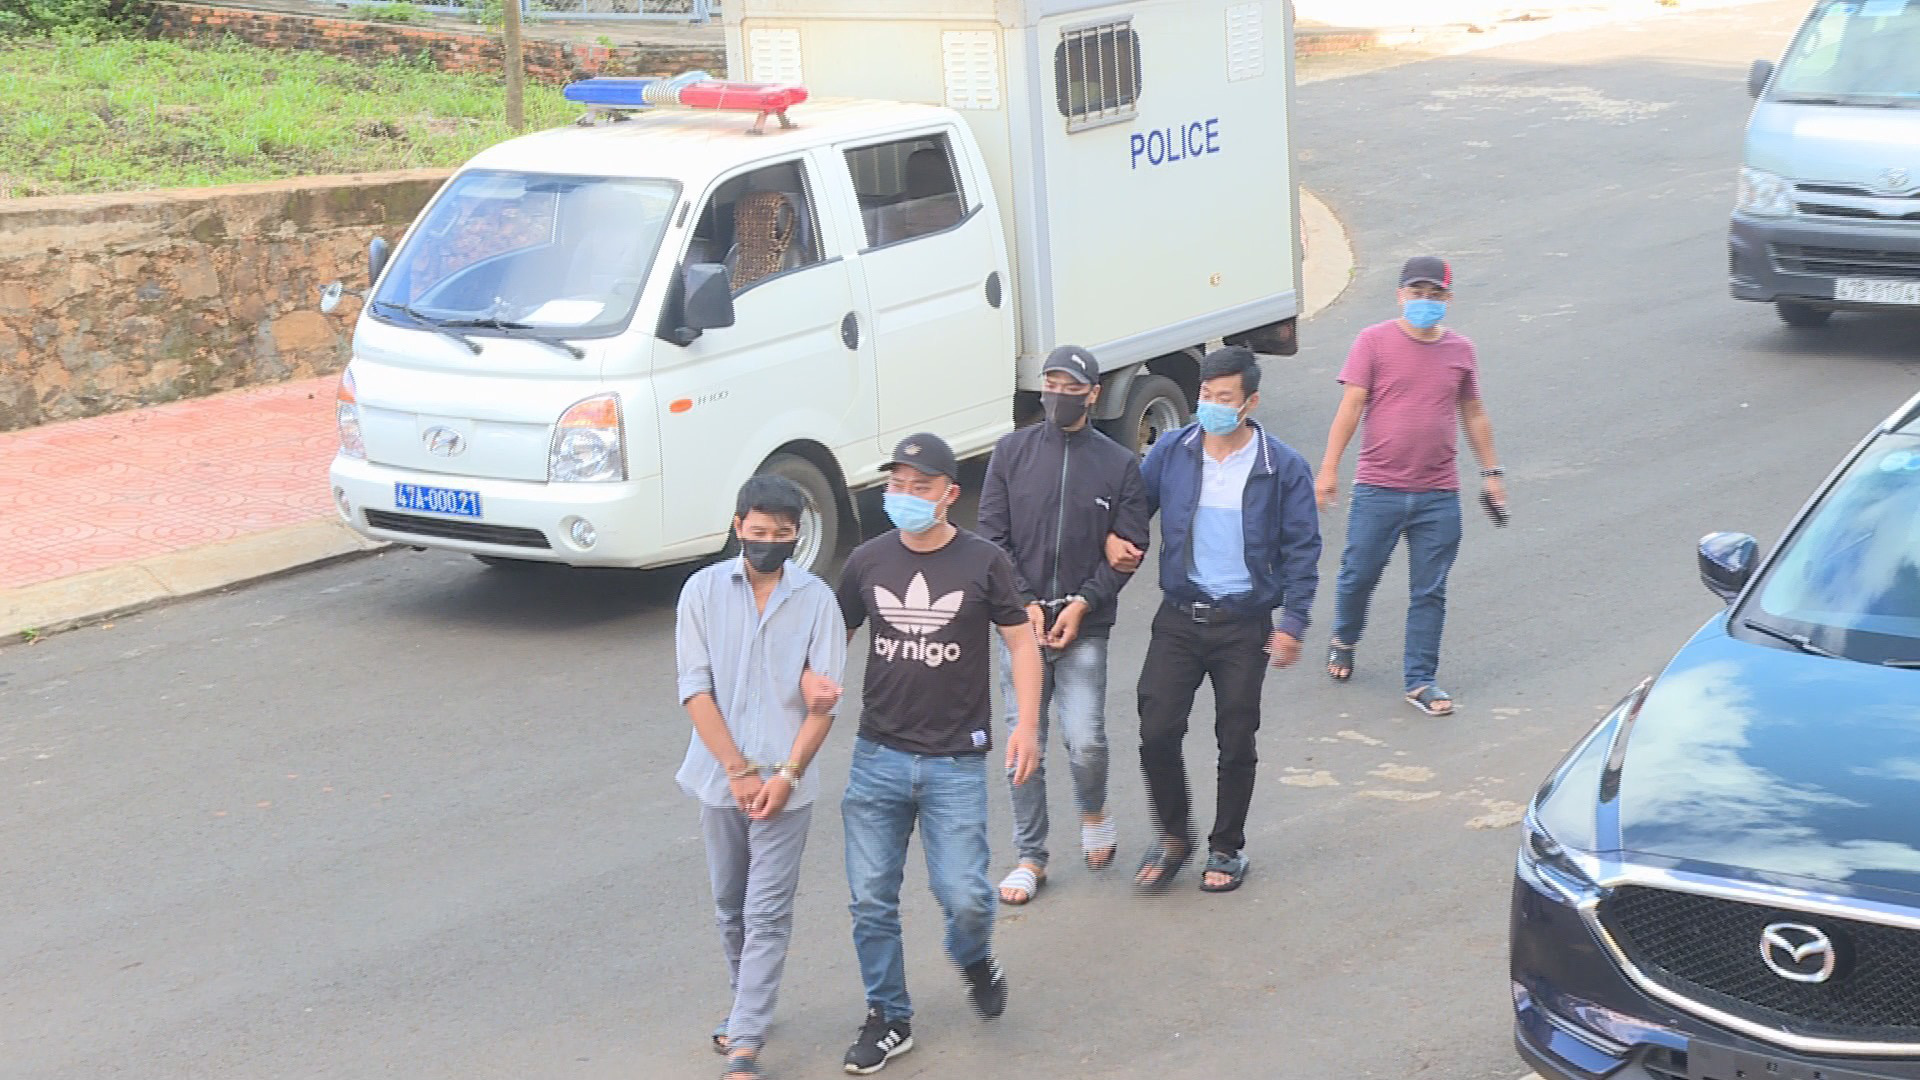 Cảnh sát vây bắt 2 đối tượng chuyên trộm cắp trong bệnh viện - Ảnh 1.